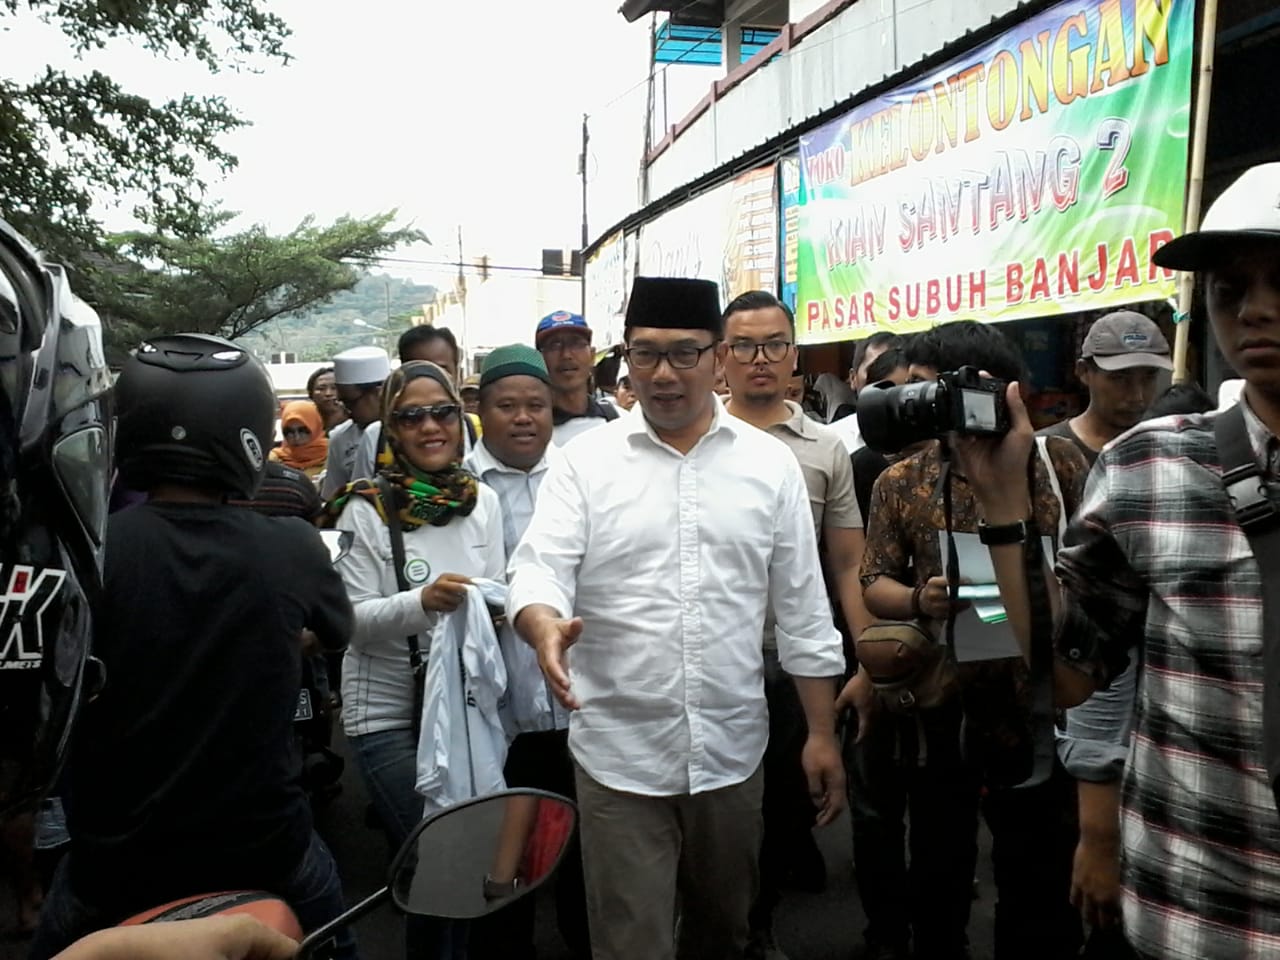 Ridwan Kamil saat kunjungannya ke Kota Banjar sebagai Calon Gubernur Jawa Barat di Pilgub 2018.